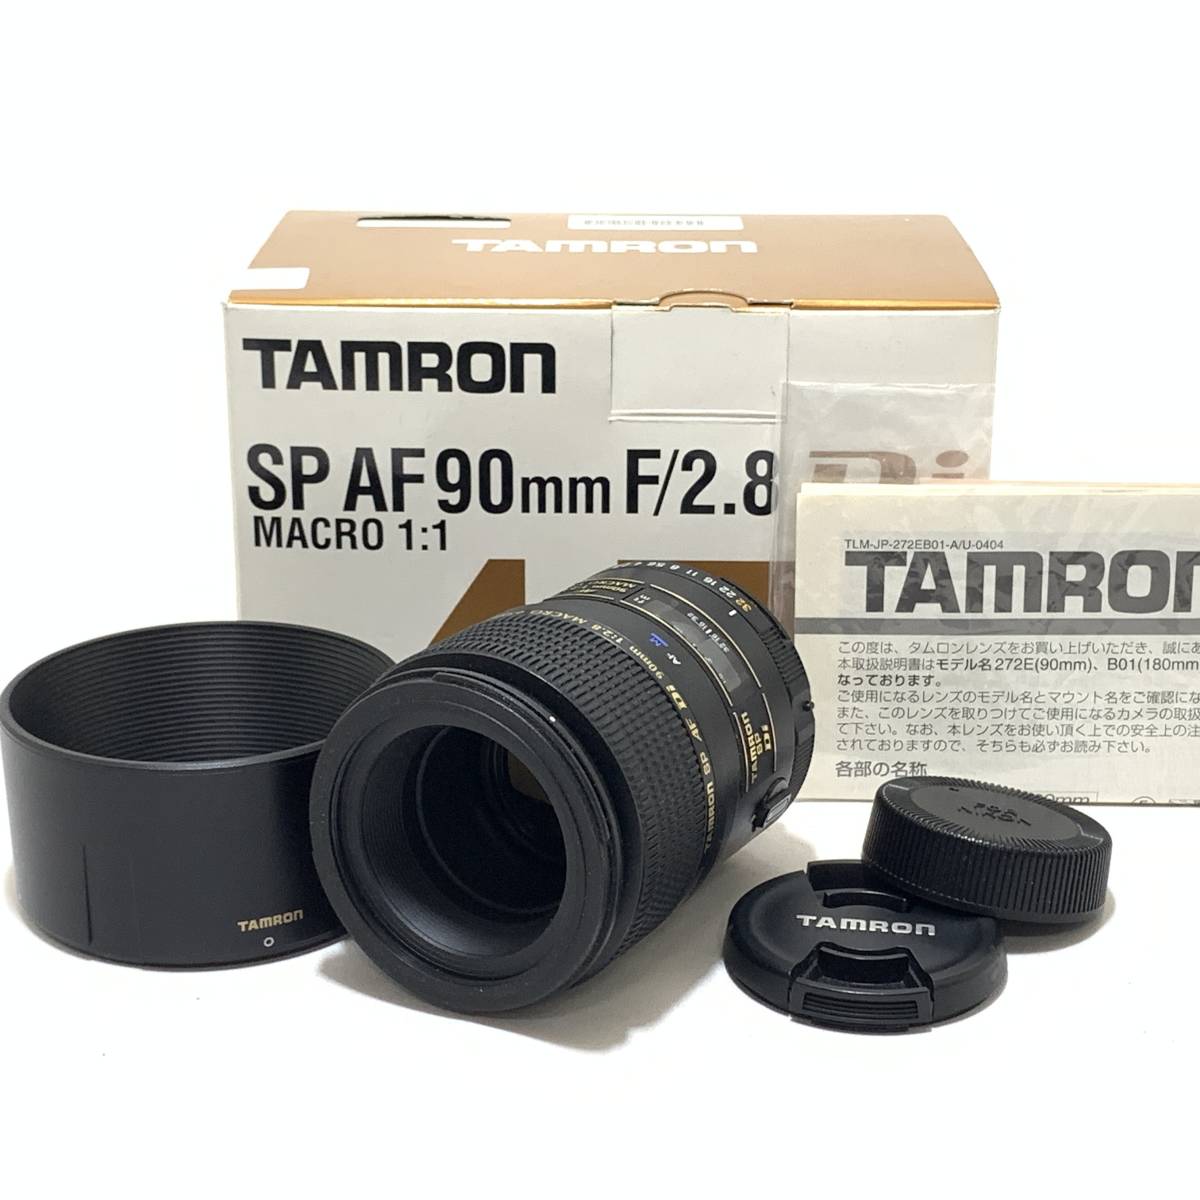 ☆特上品☆ TAMRON タムロン SP AF 90mm F2.8 Di MACRO ニコン NIKON